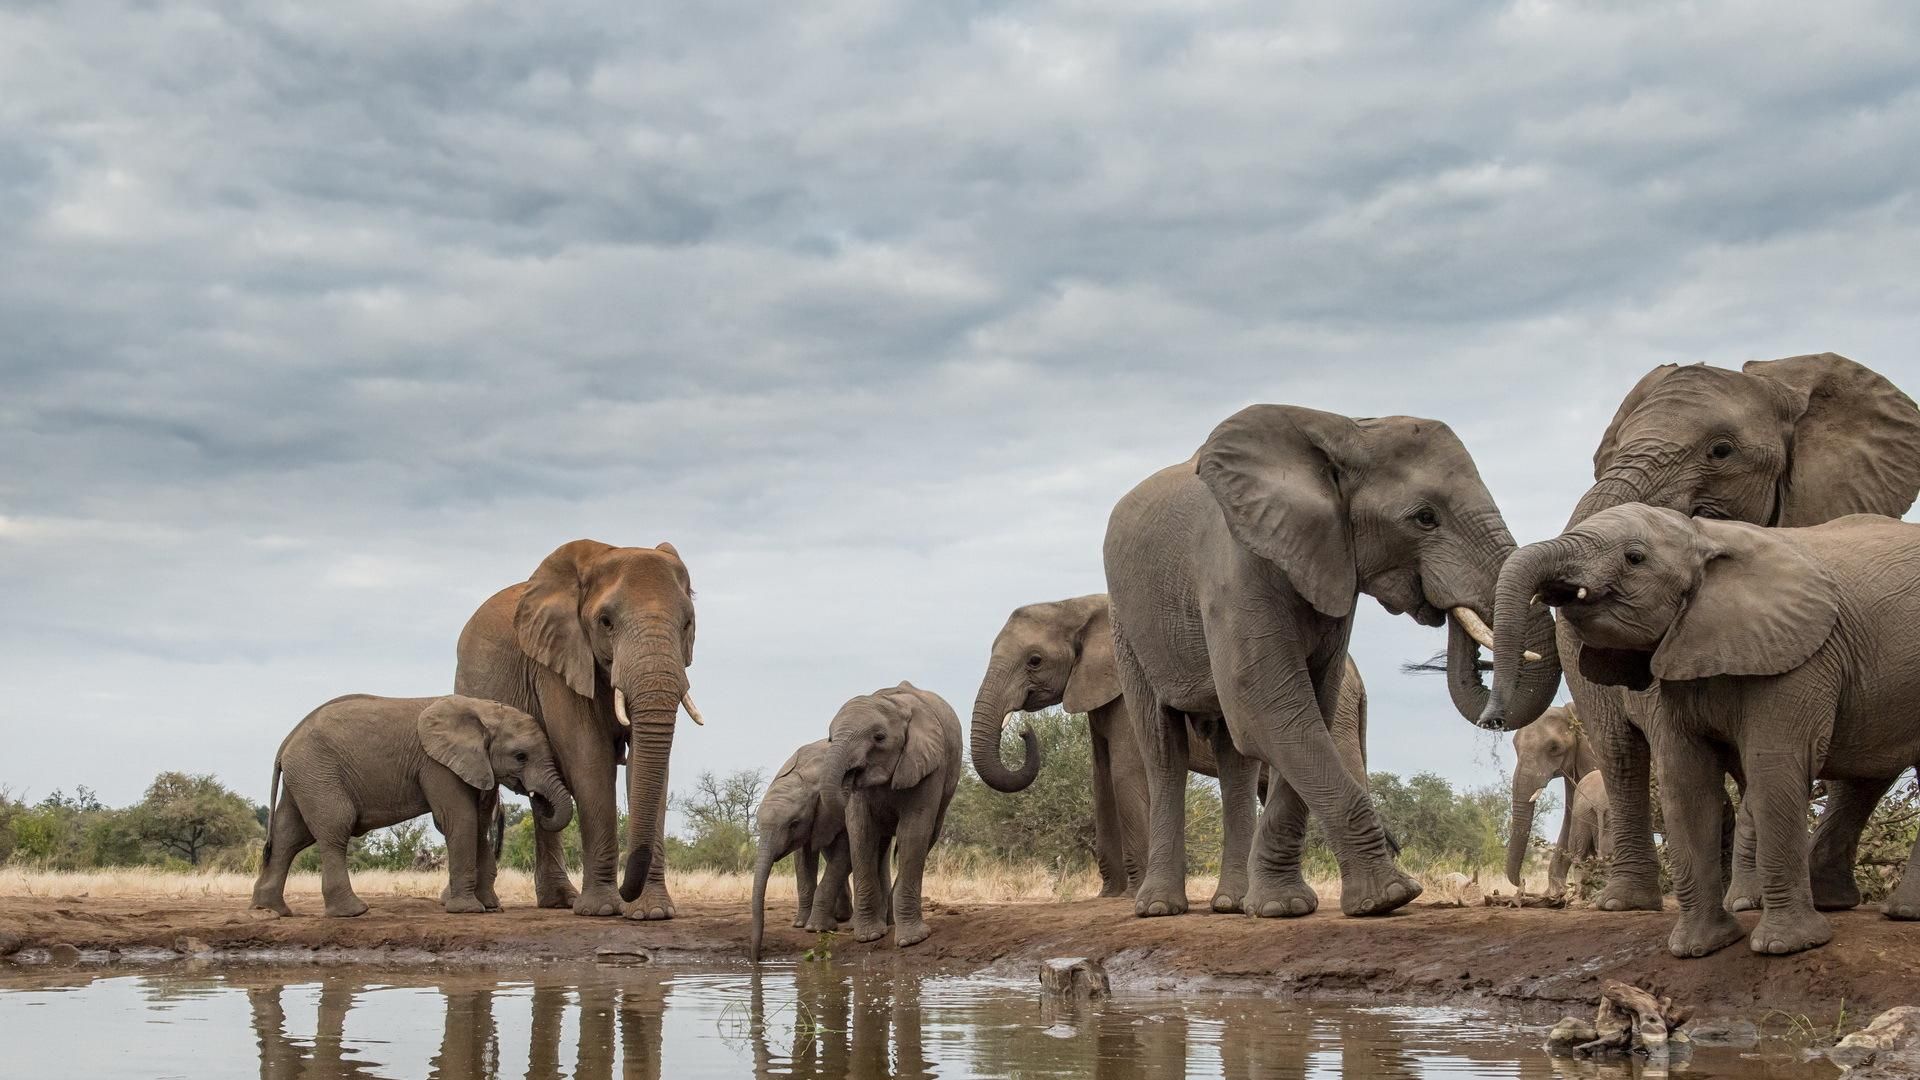 К концу века в Африке вымрет половина видов животных: доклад ООН